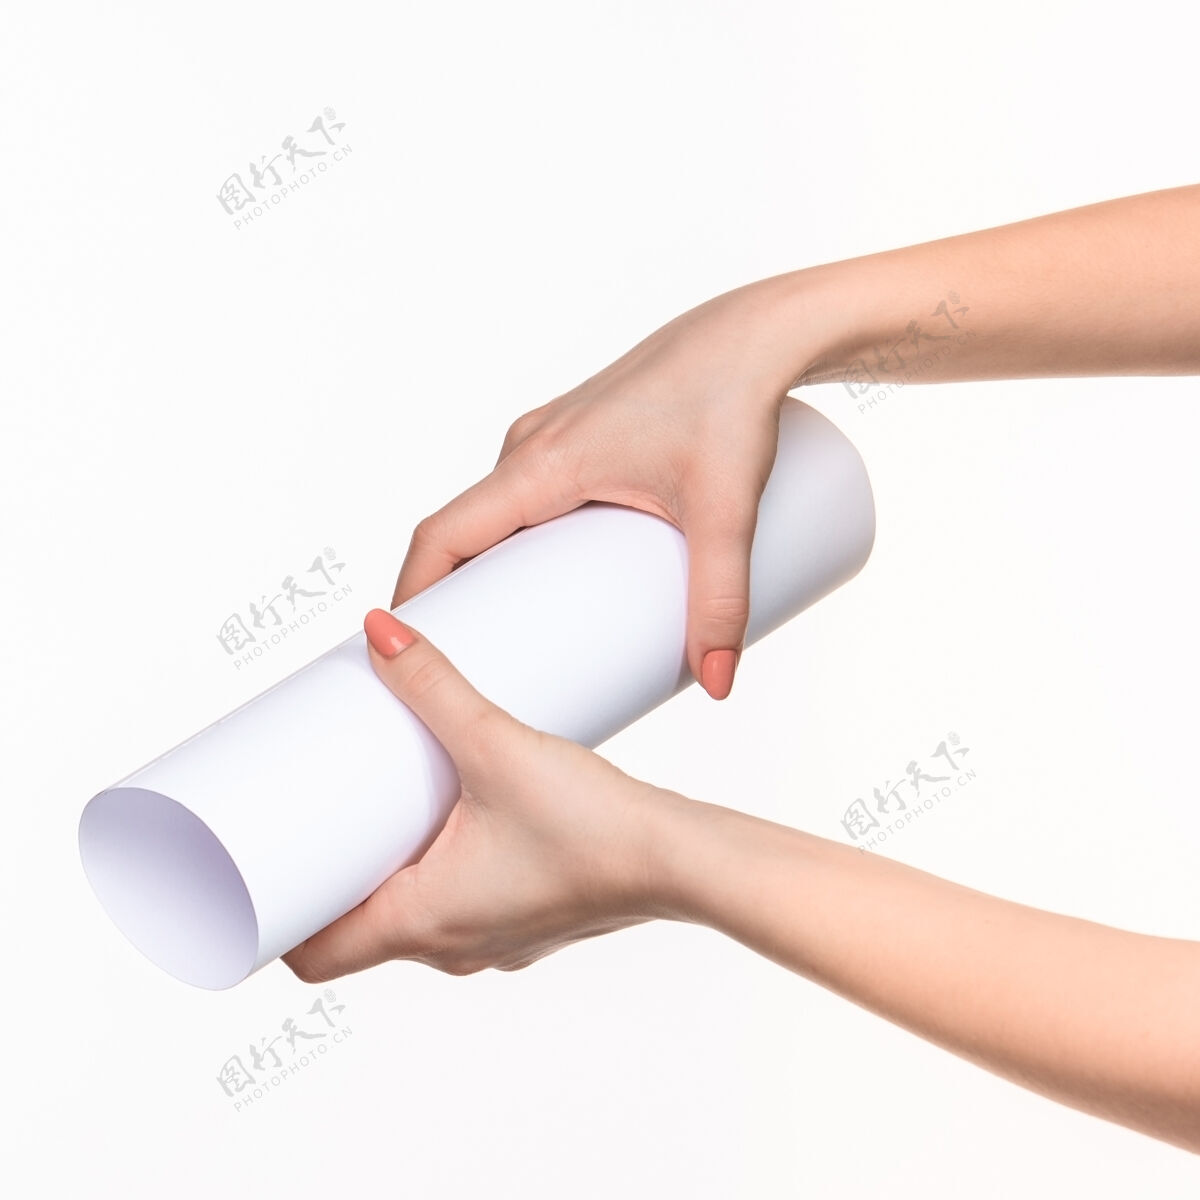 切割白色圆柱体的道具在女性手上就白了保持桶球体